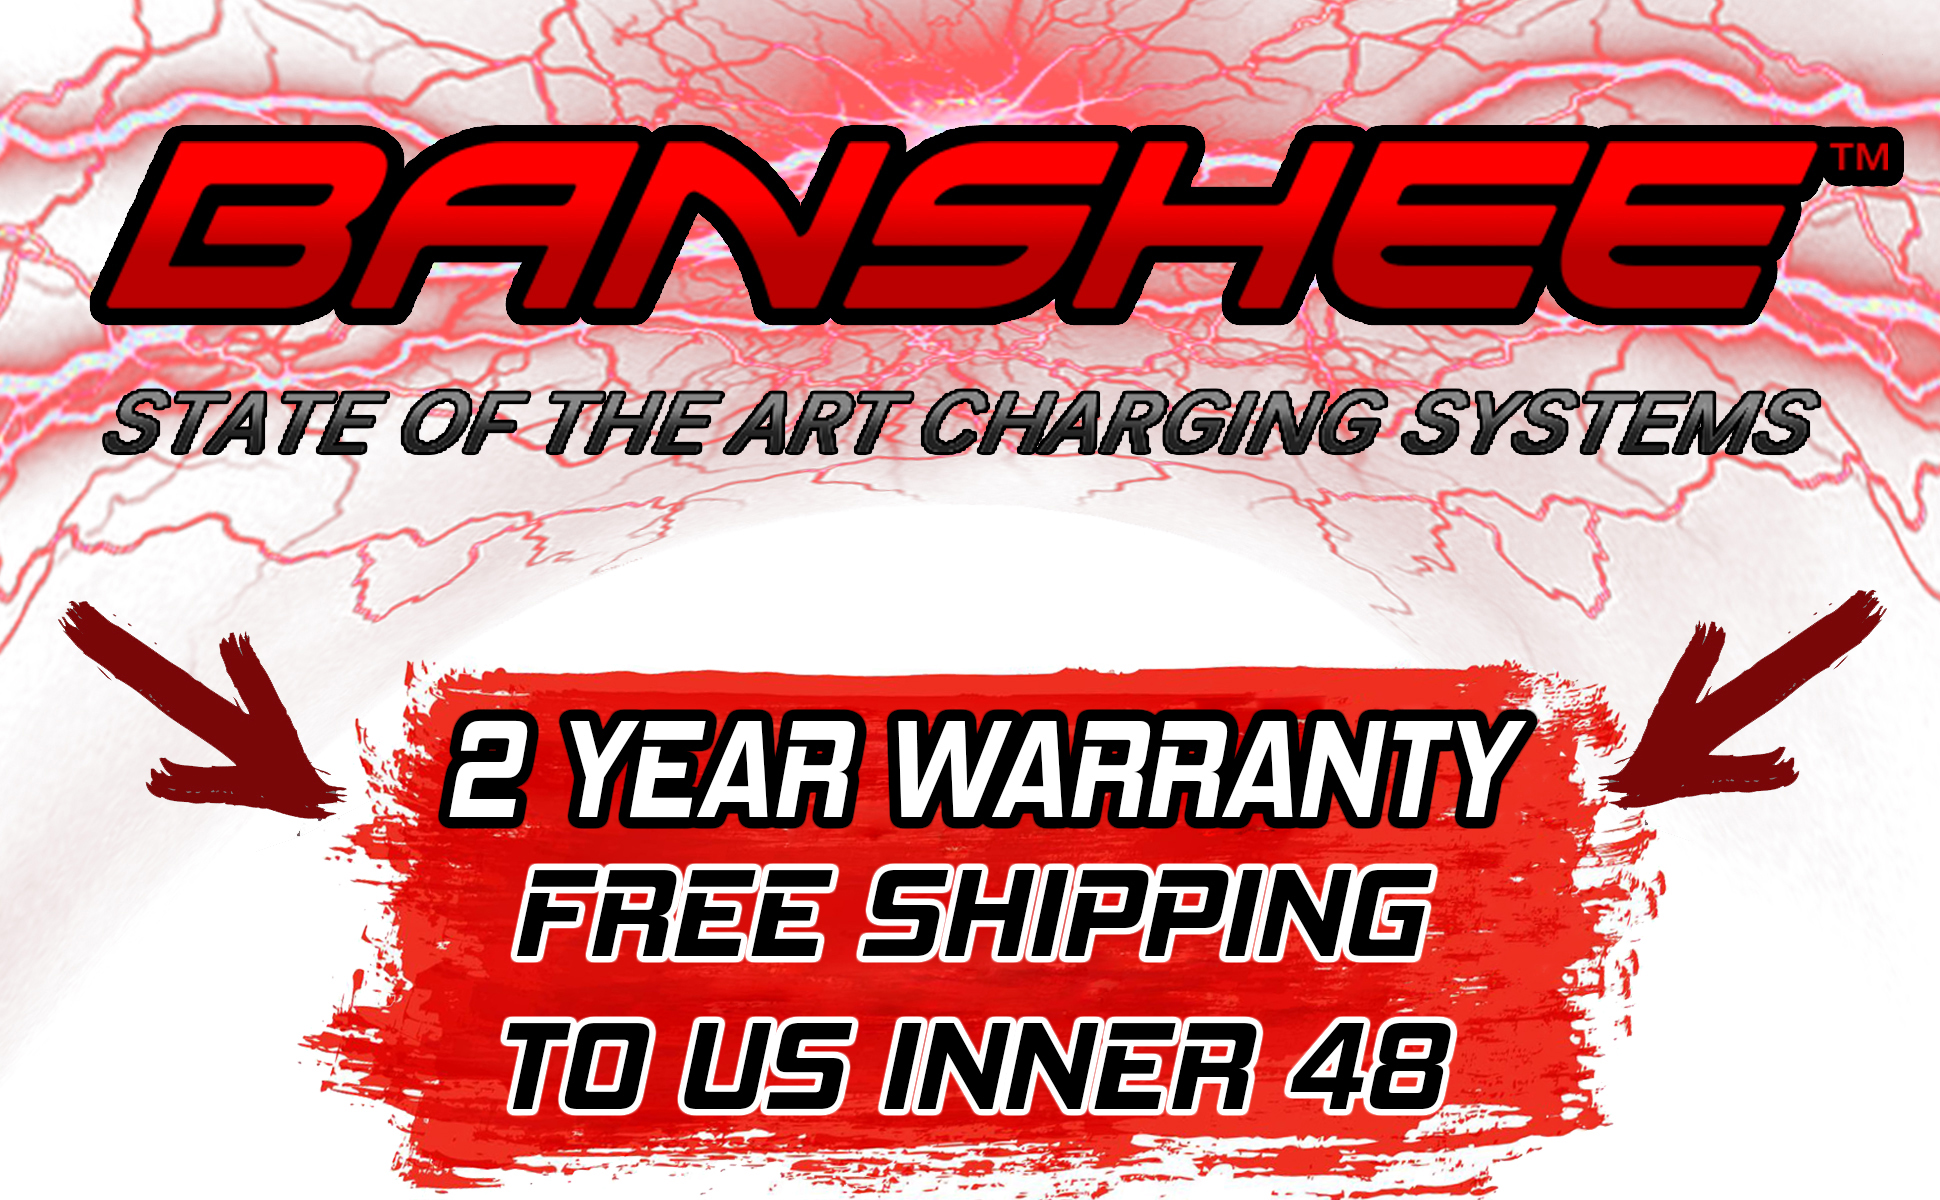 Banshee 6V/12V 750MA Hanging Smart Charger Maintainer w/ Battery Voltage Tester